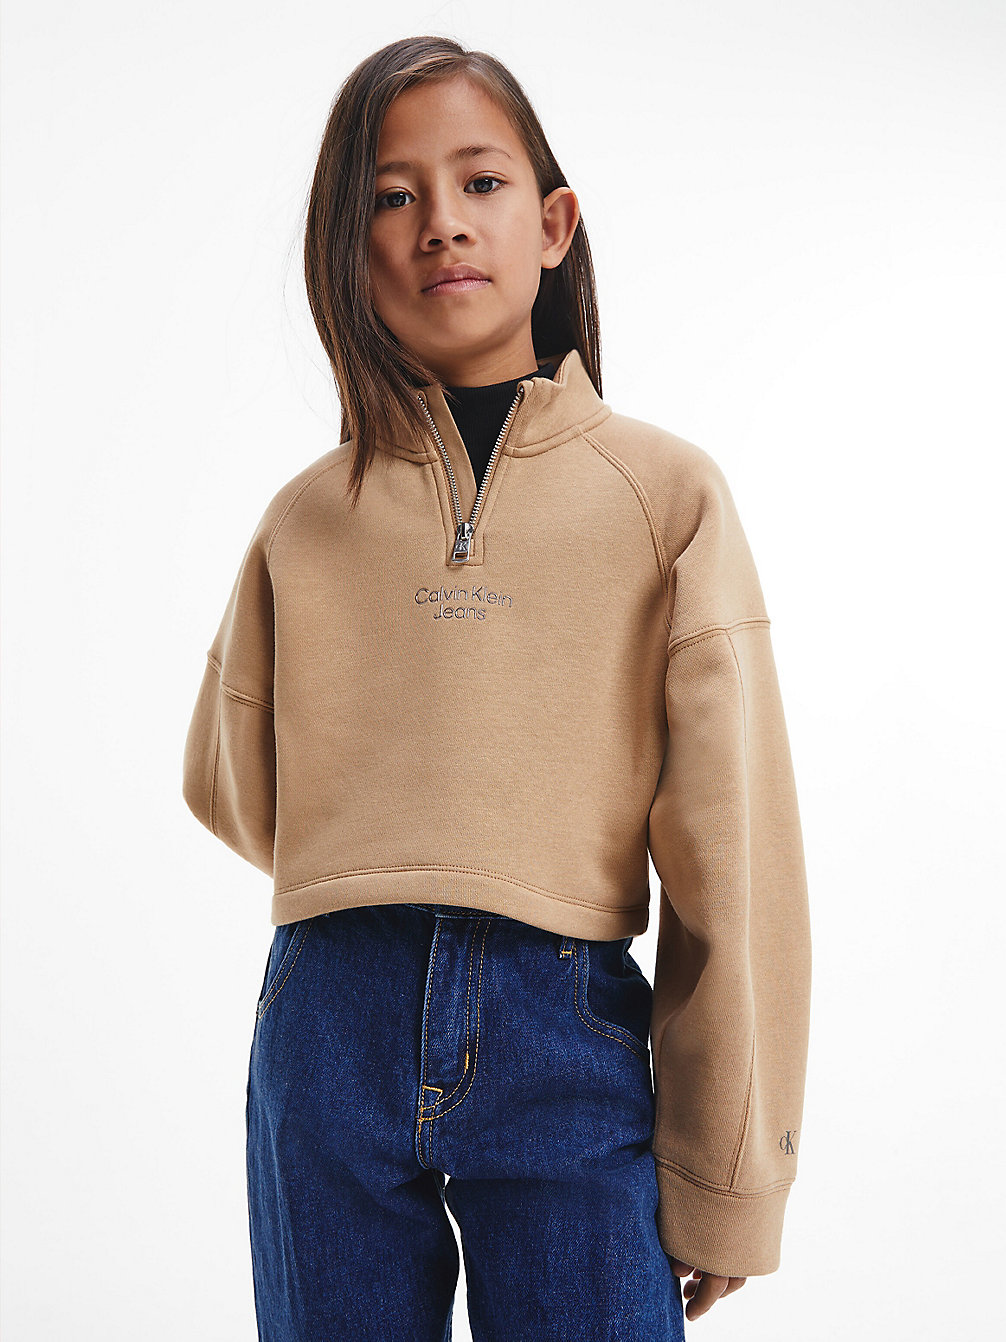 TIMELESS CAMEL Cropped Zip Sweatshirt undefined girls Calvin Klein